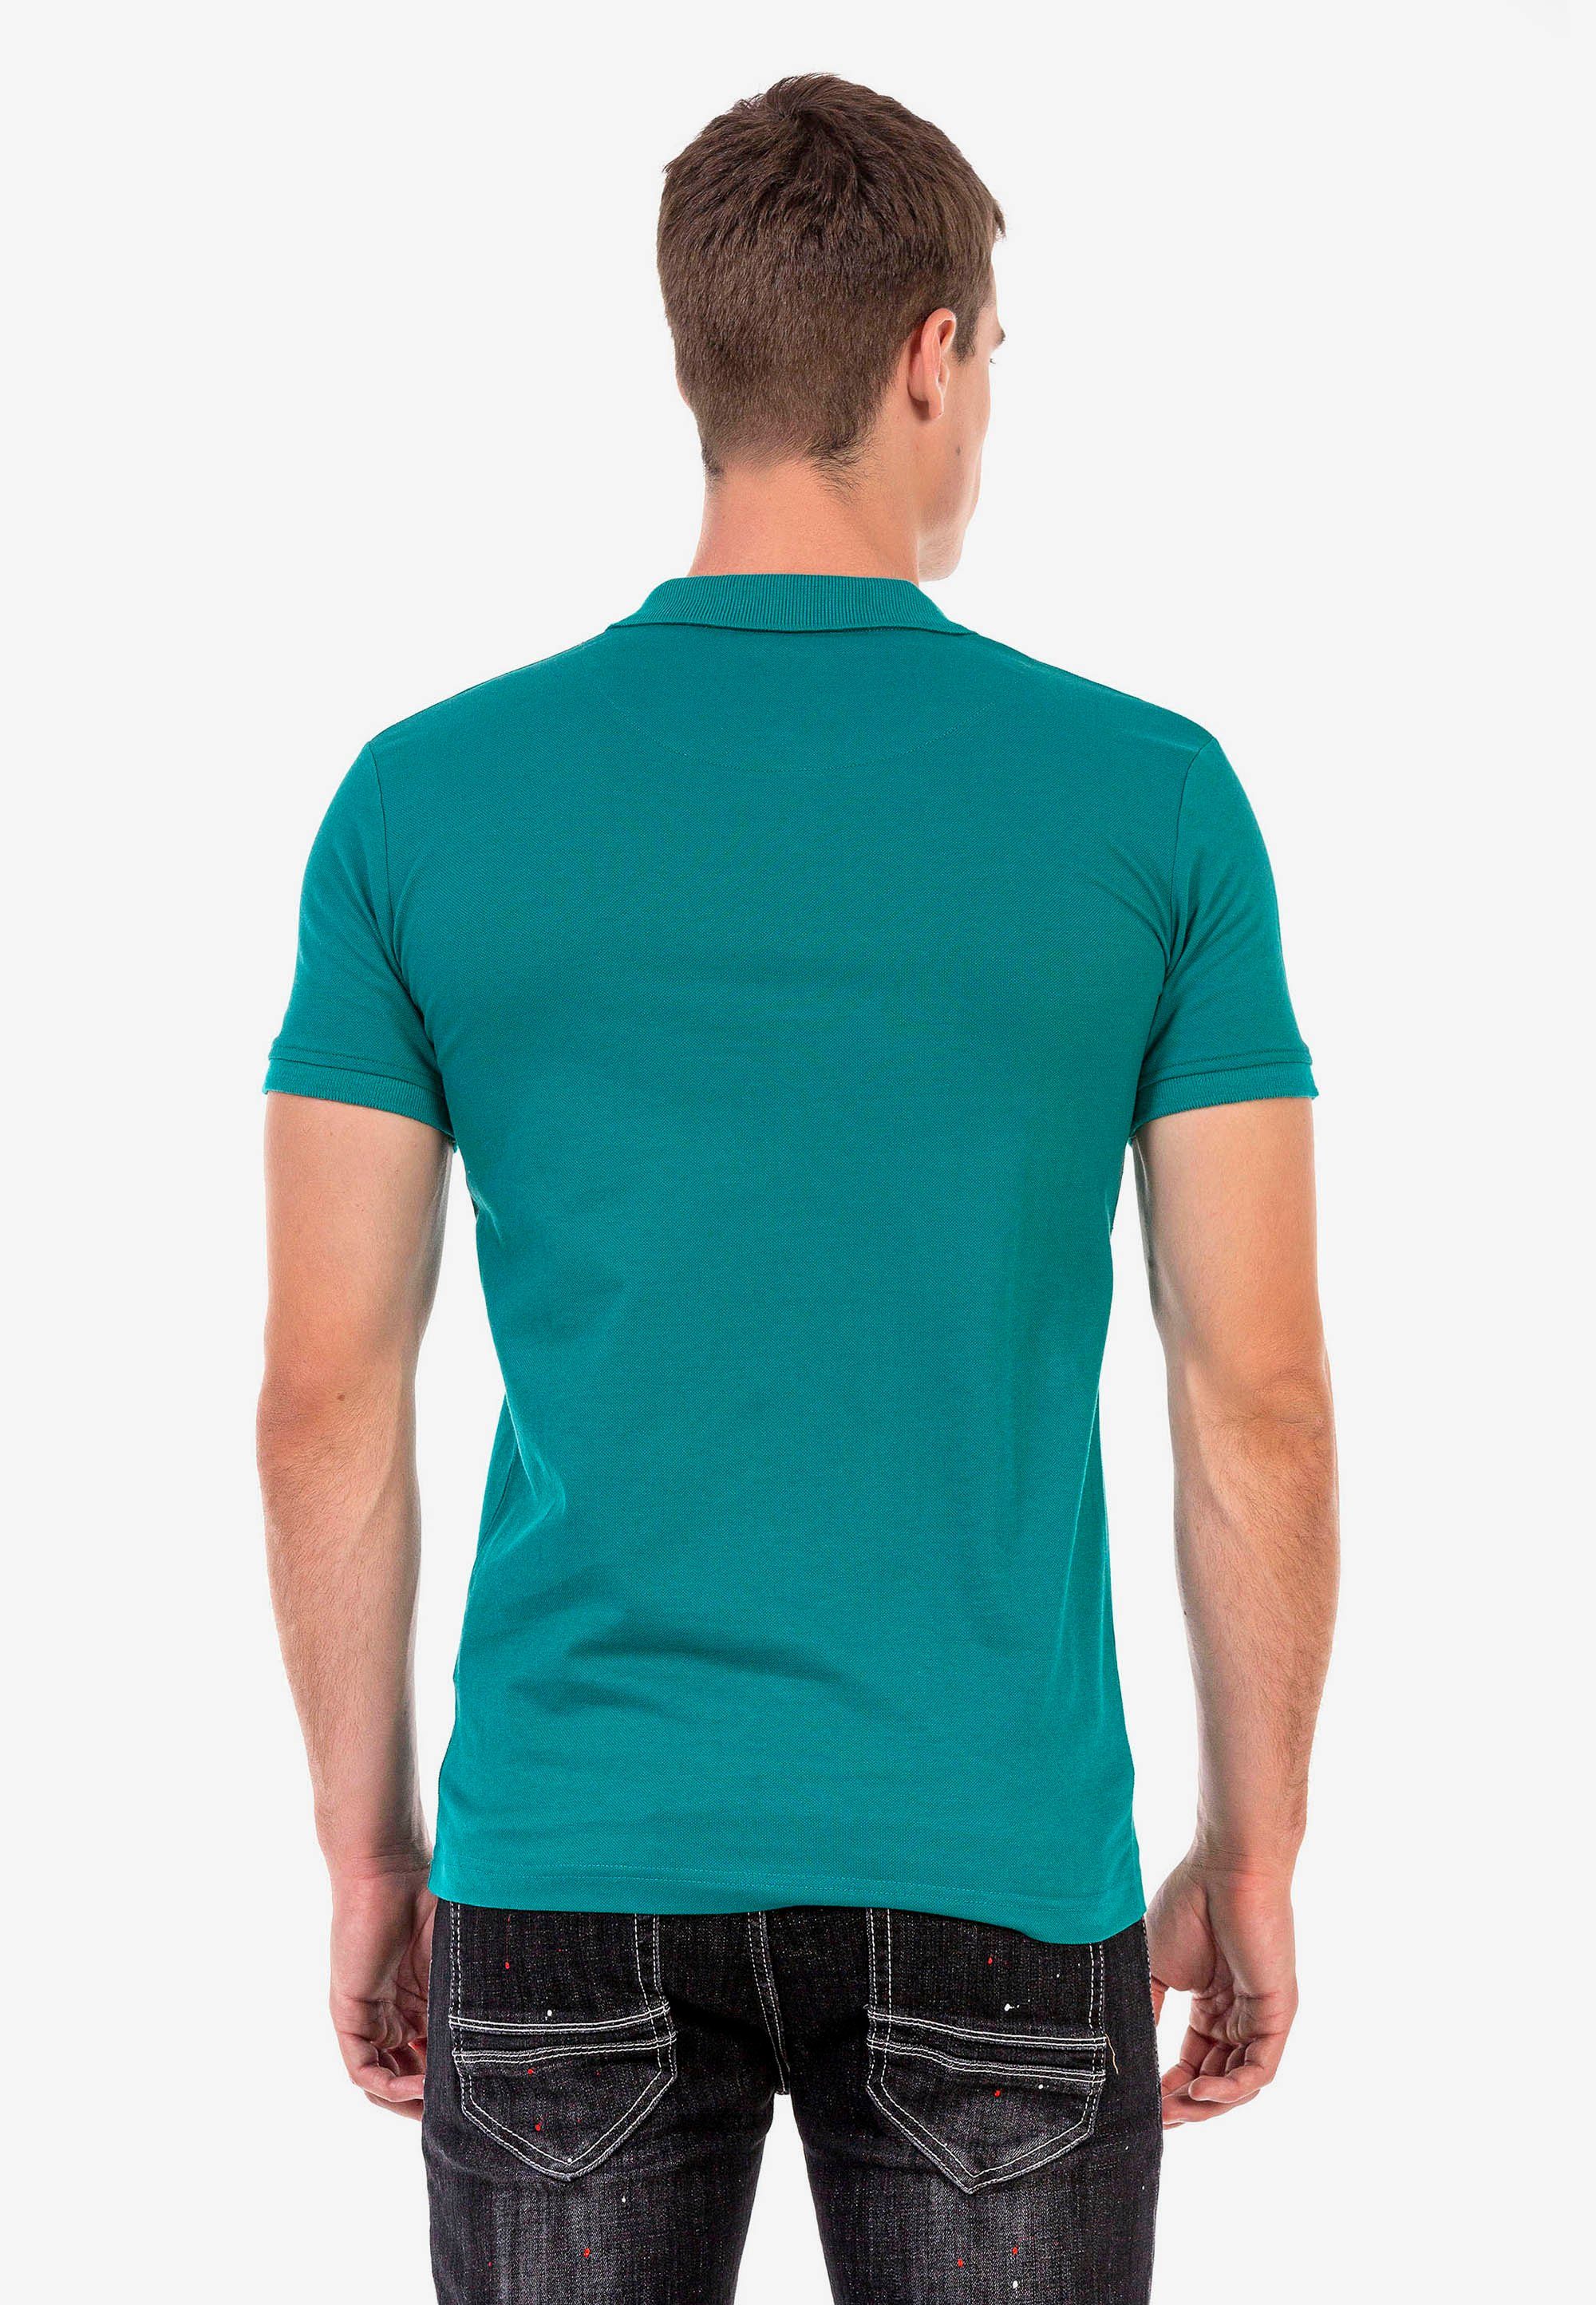 Cipo Poloshirt kleiner Baxx Markenstickerei mit grün &